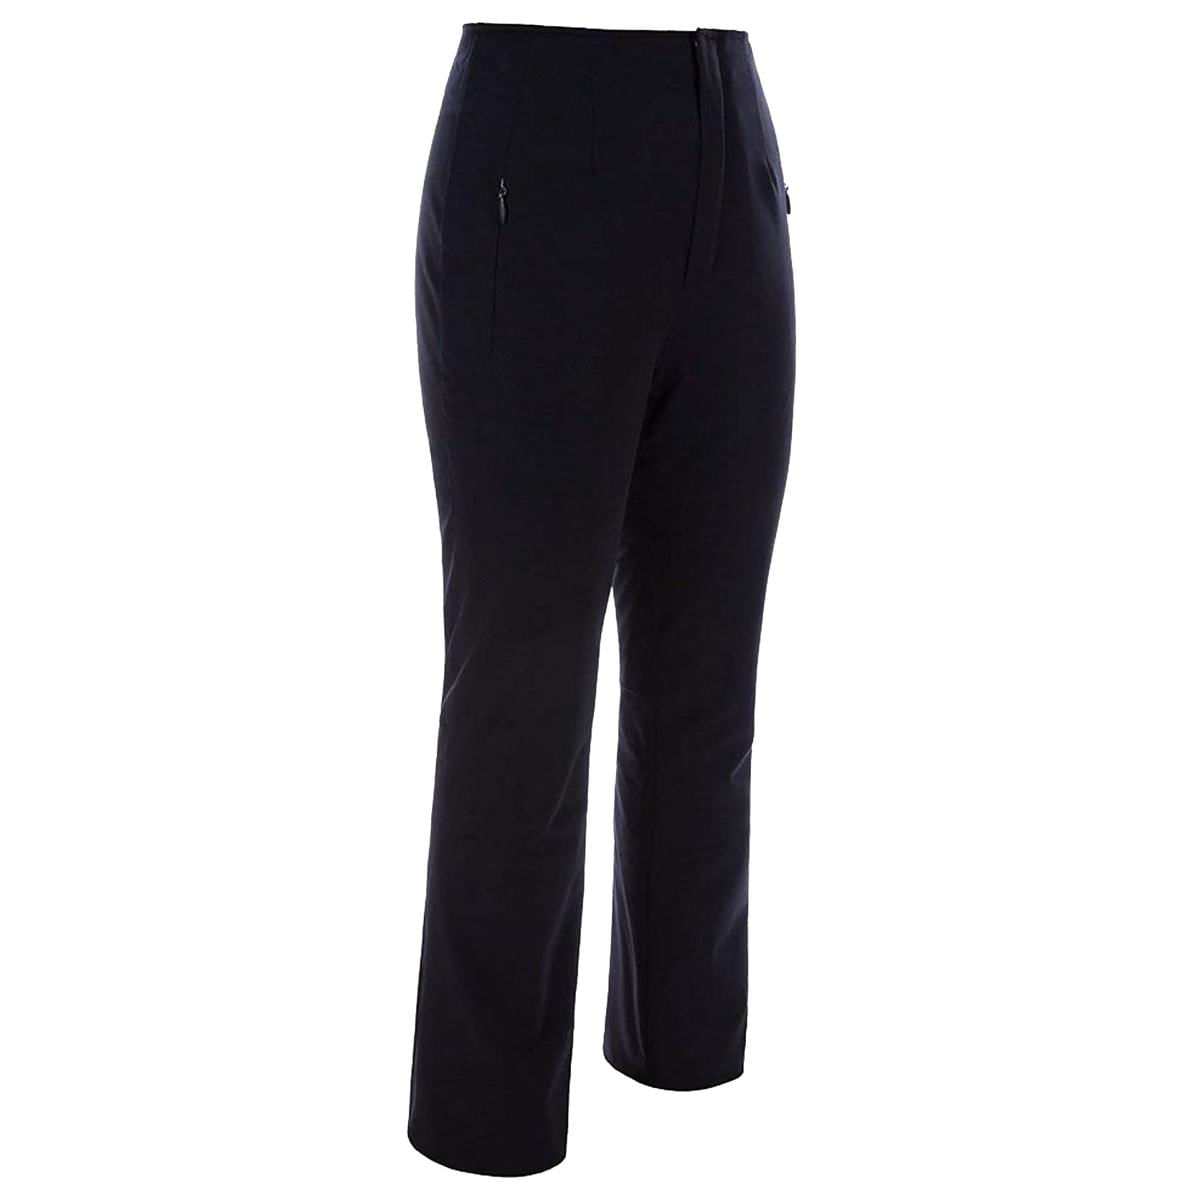 Women's NILS Sportswear Size 10 Snow Pants Skiing Black Waterproof Stretch  Waist